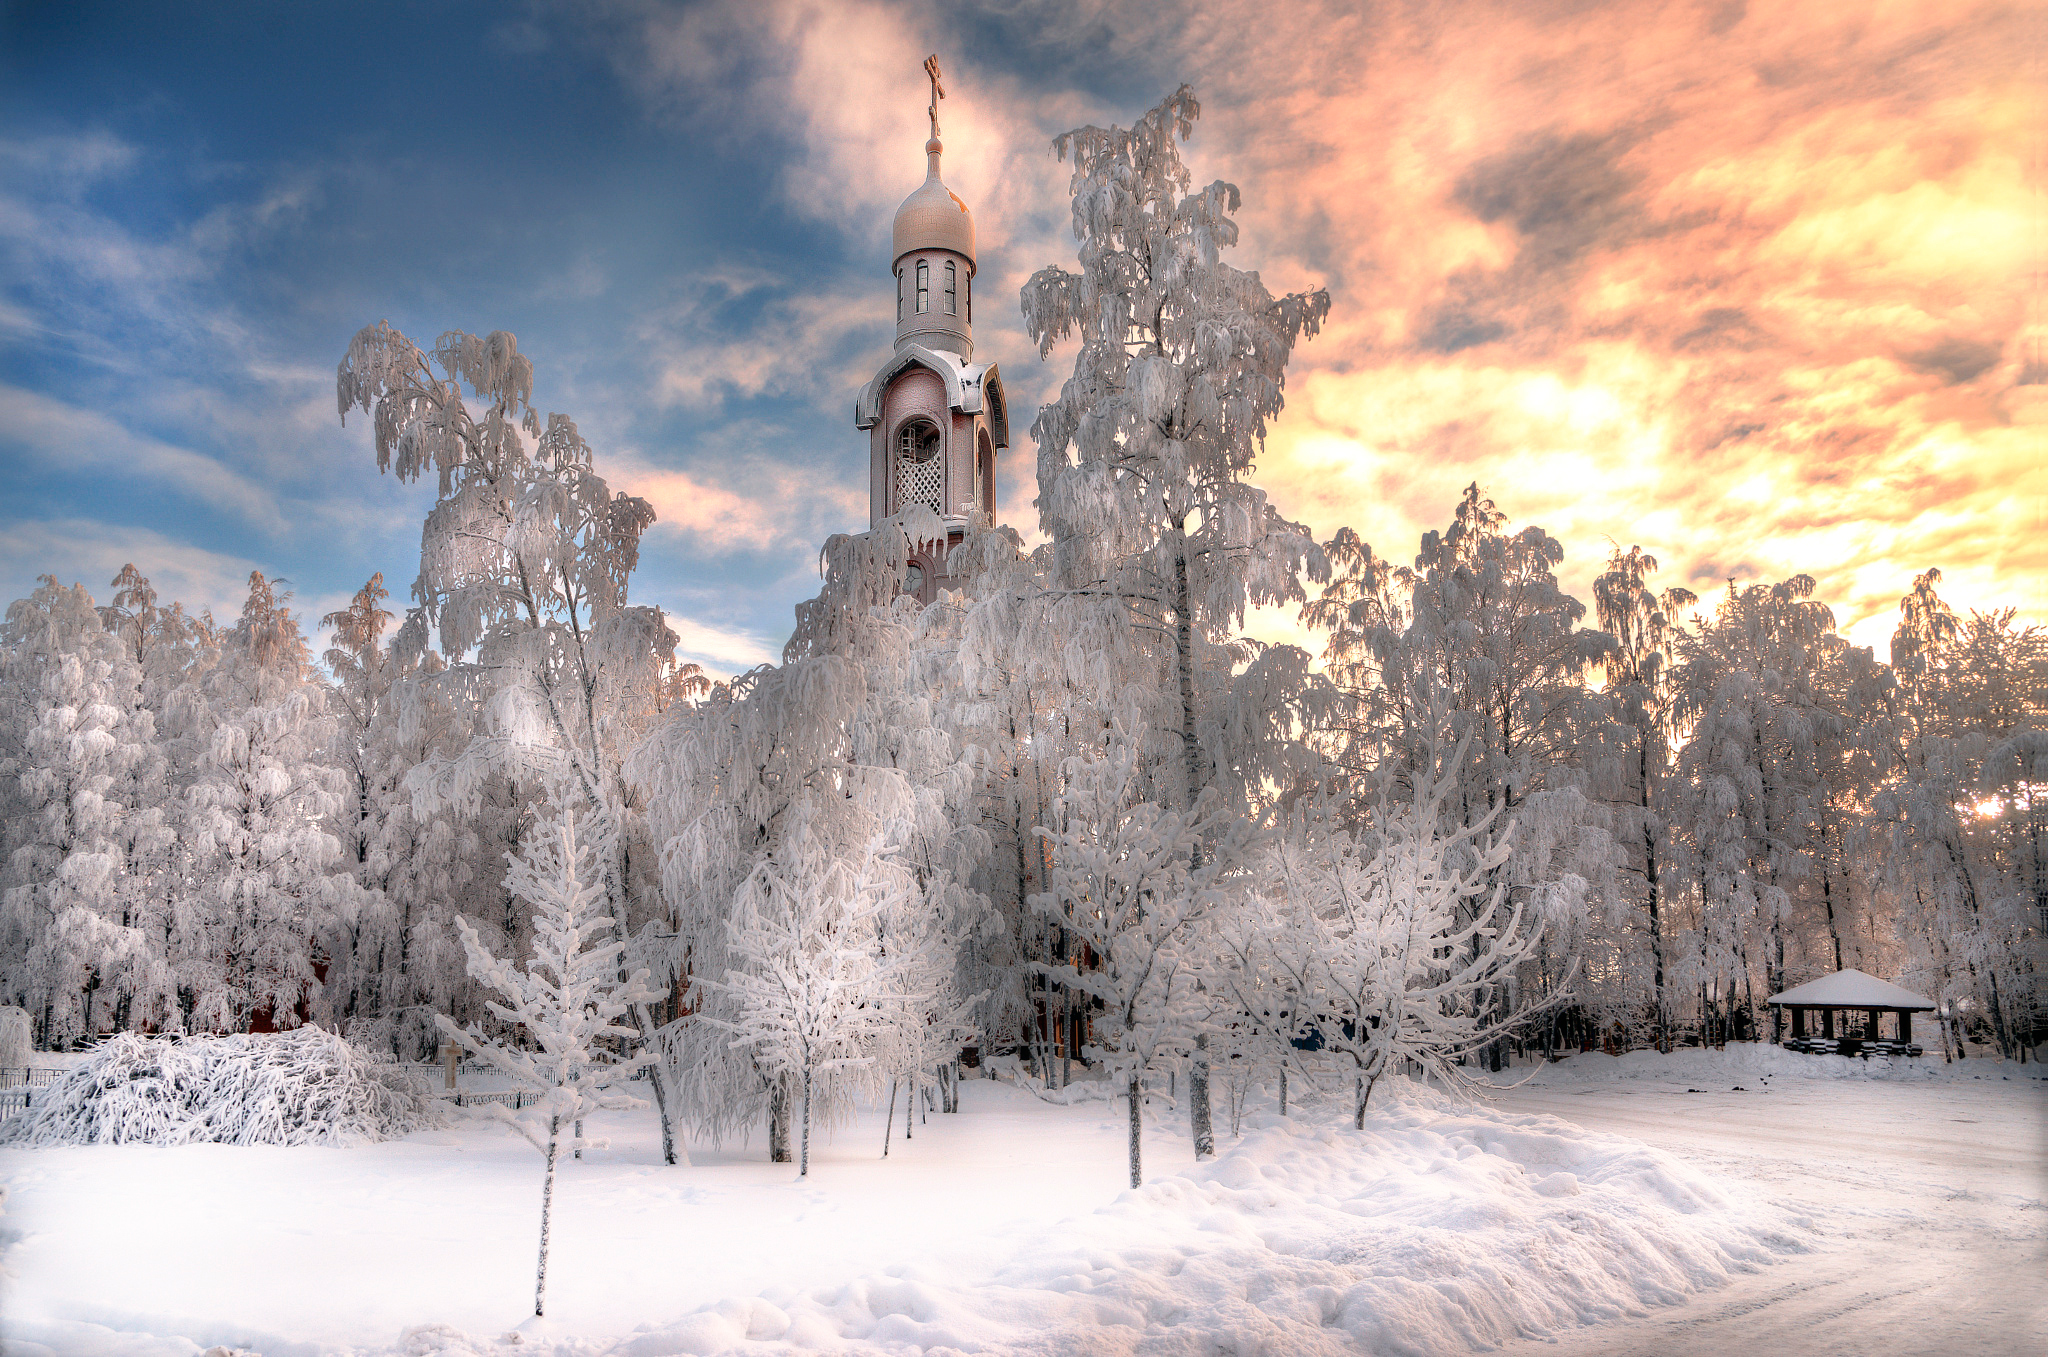 Скачать обои бесплатно Зима, Снег, Дерево, Россия, Церковь, Церкви, Религиозные картинка на рабочий стол ПК